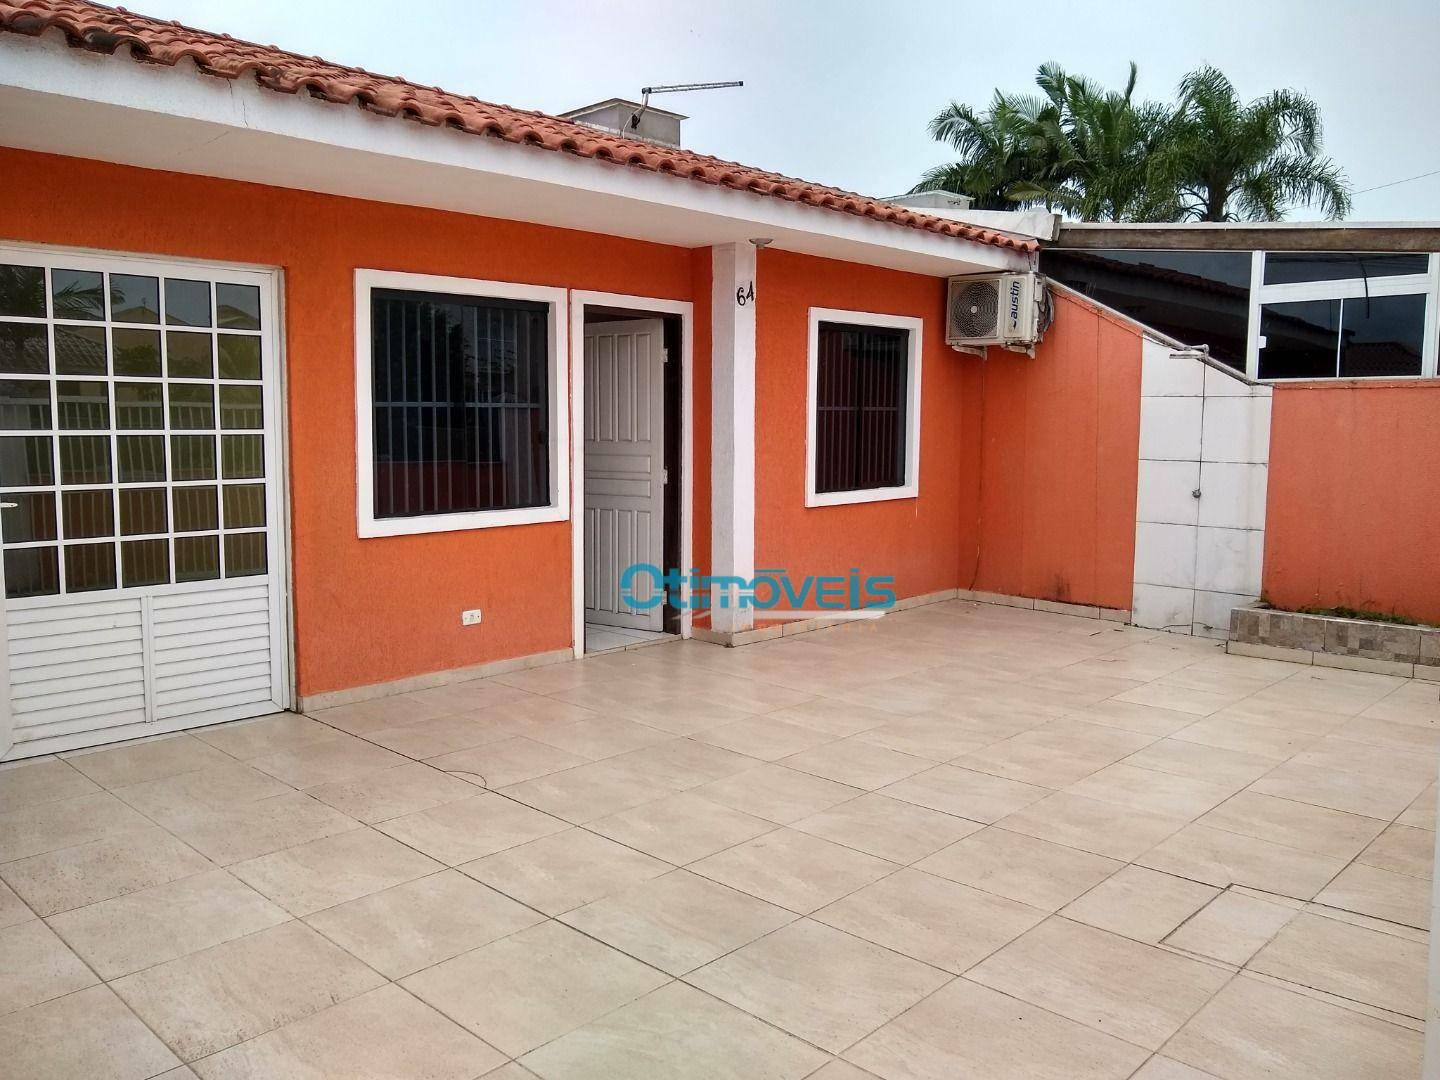 Casa com 2 quartos à venda - Primavera - Pontal do Paraná/PR